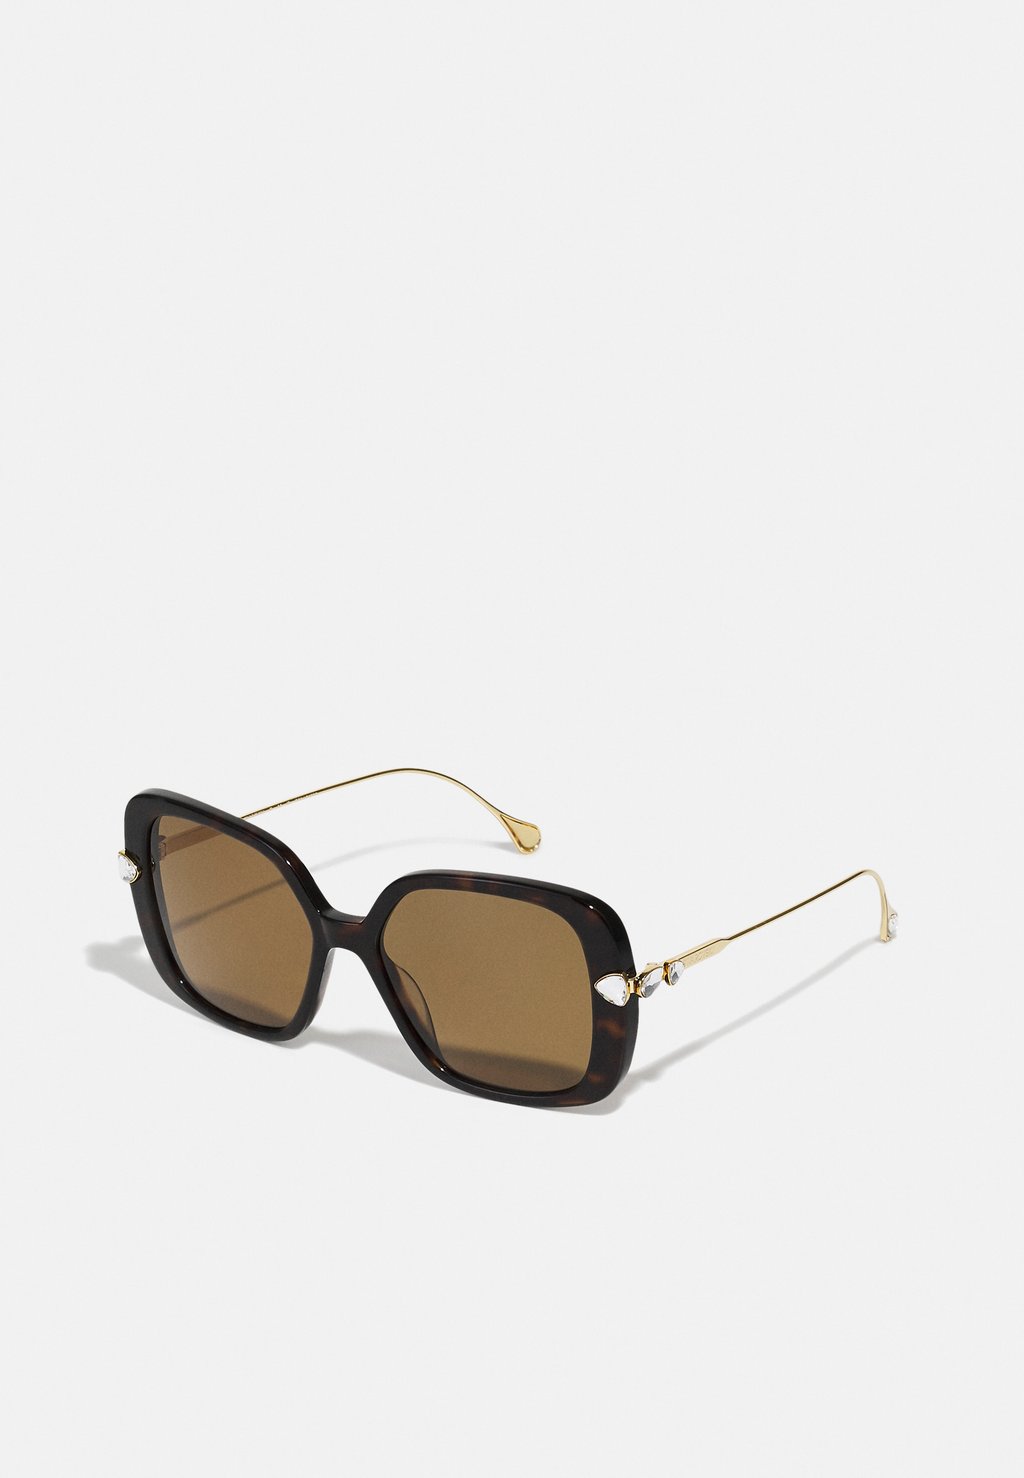 Солнцезащитные очки Swarovski, коричневый